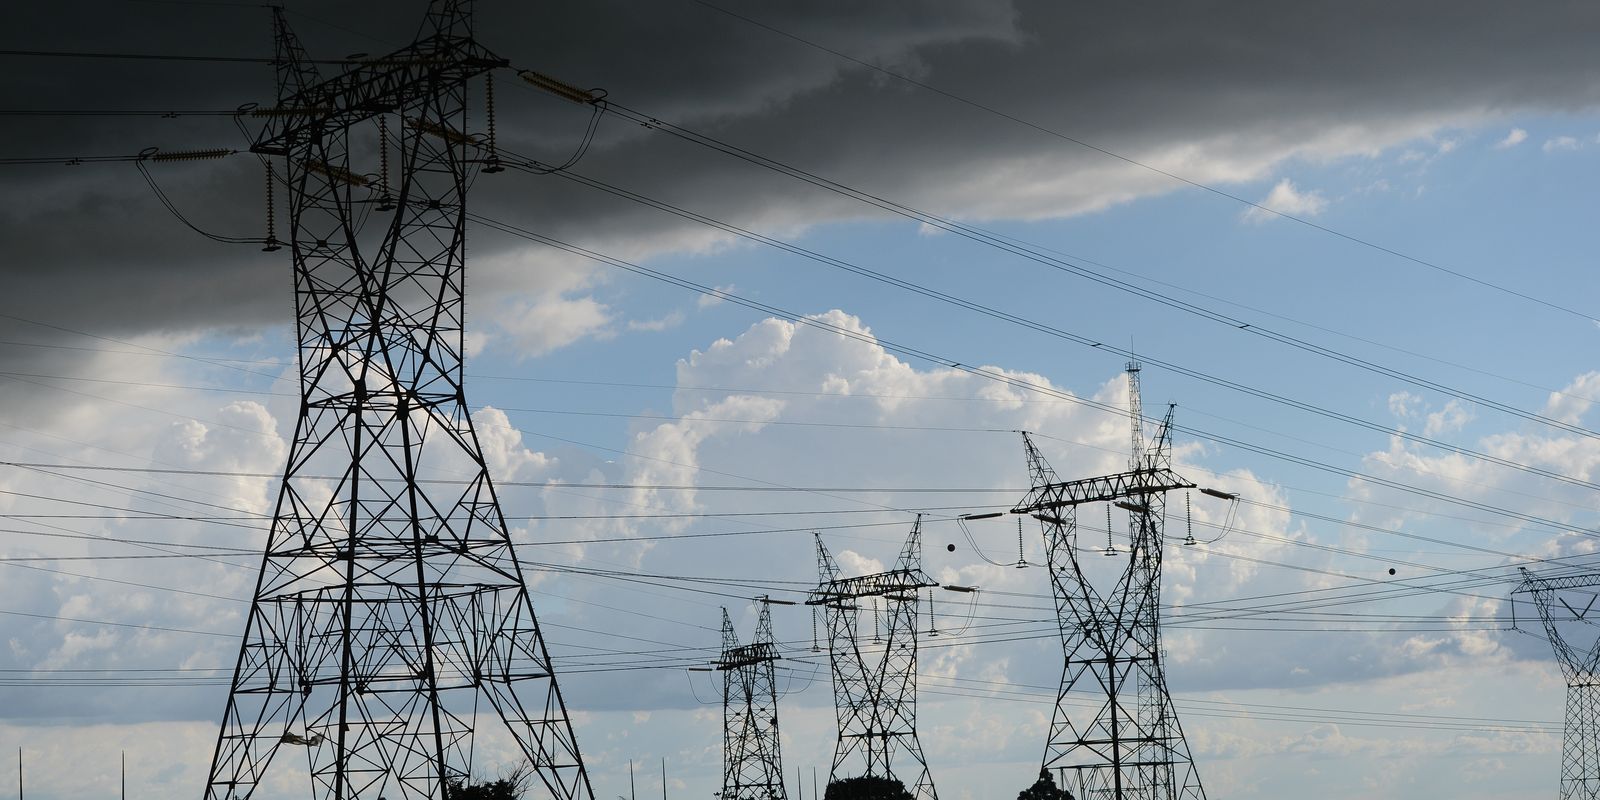 Decreto amortiza impacto financeiro da seca no setor elétrico